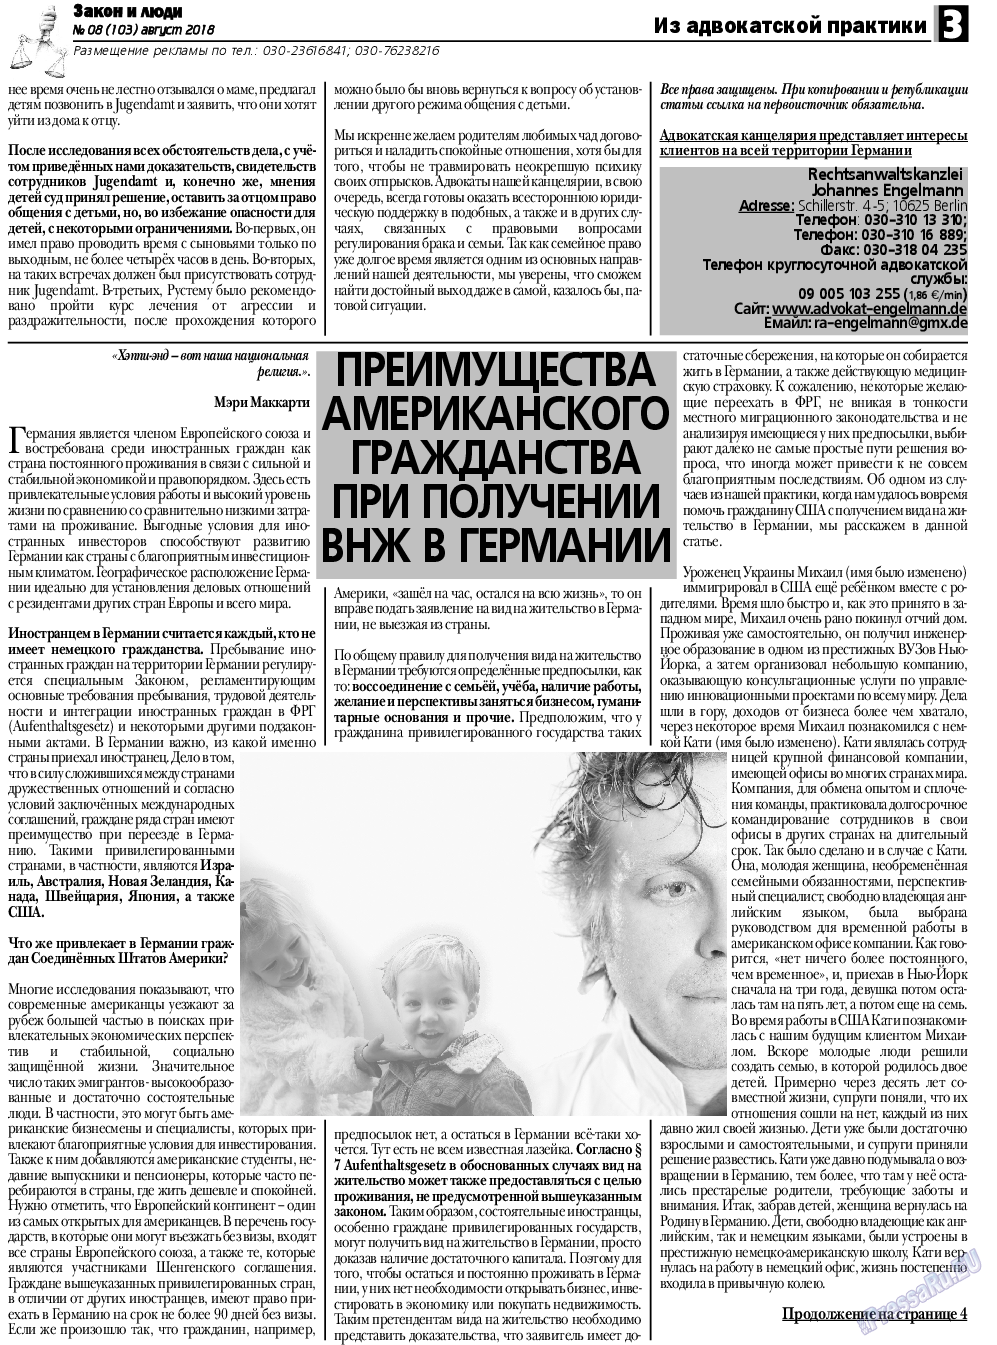 Закон и люди, газета. 2018 №8 стр.3